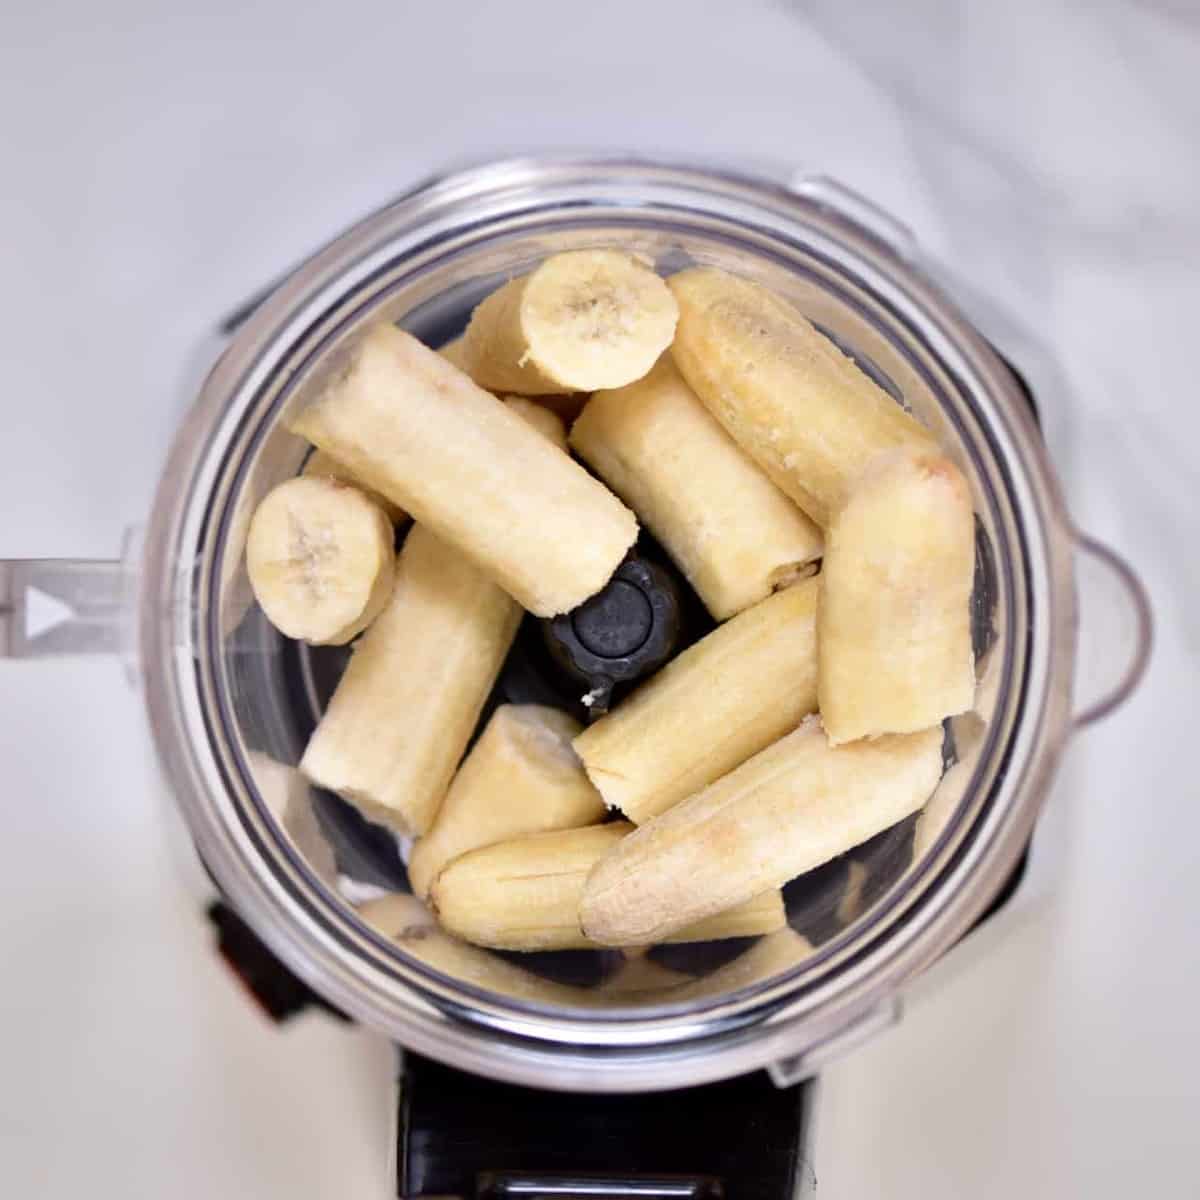 blending bananas to make a delicious nicecream recipe